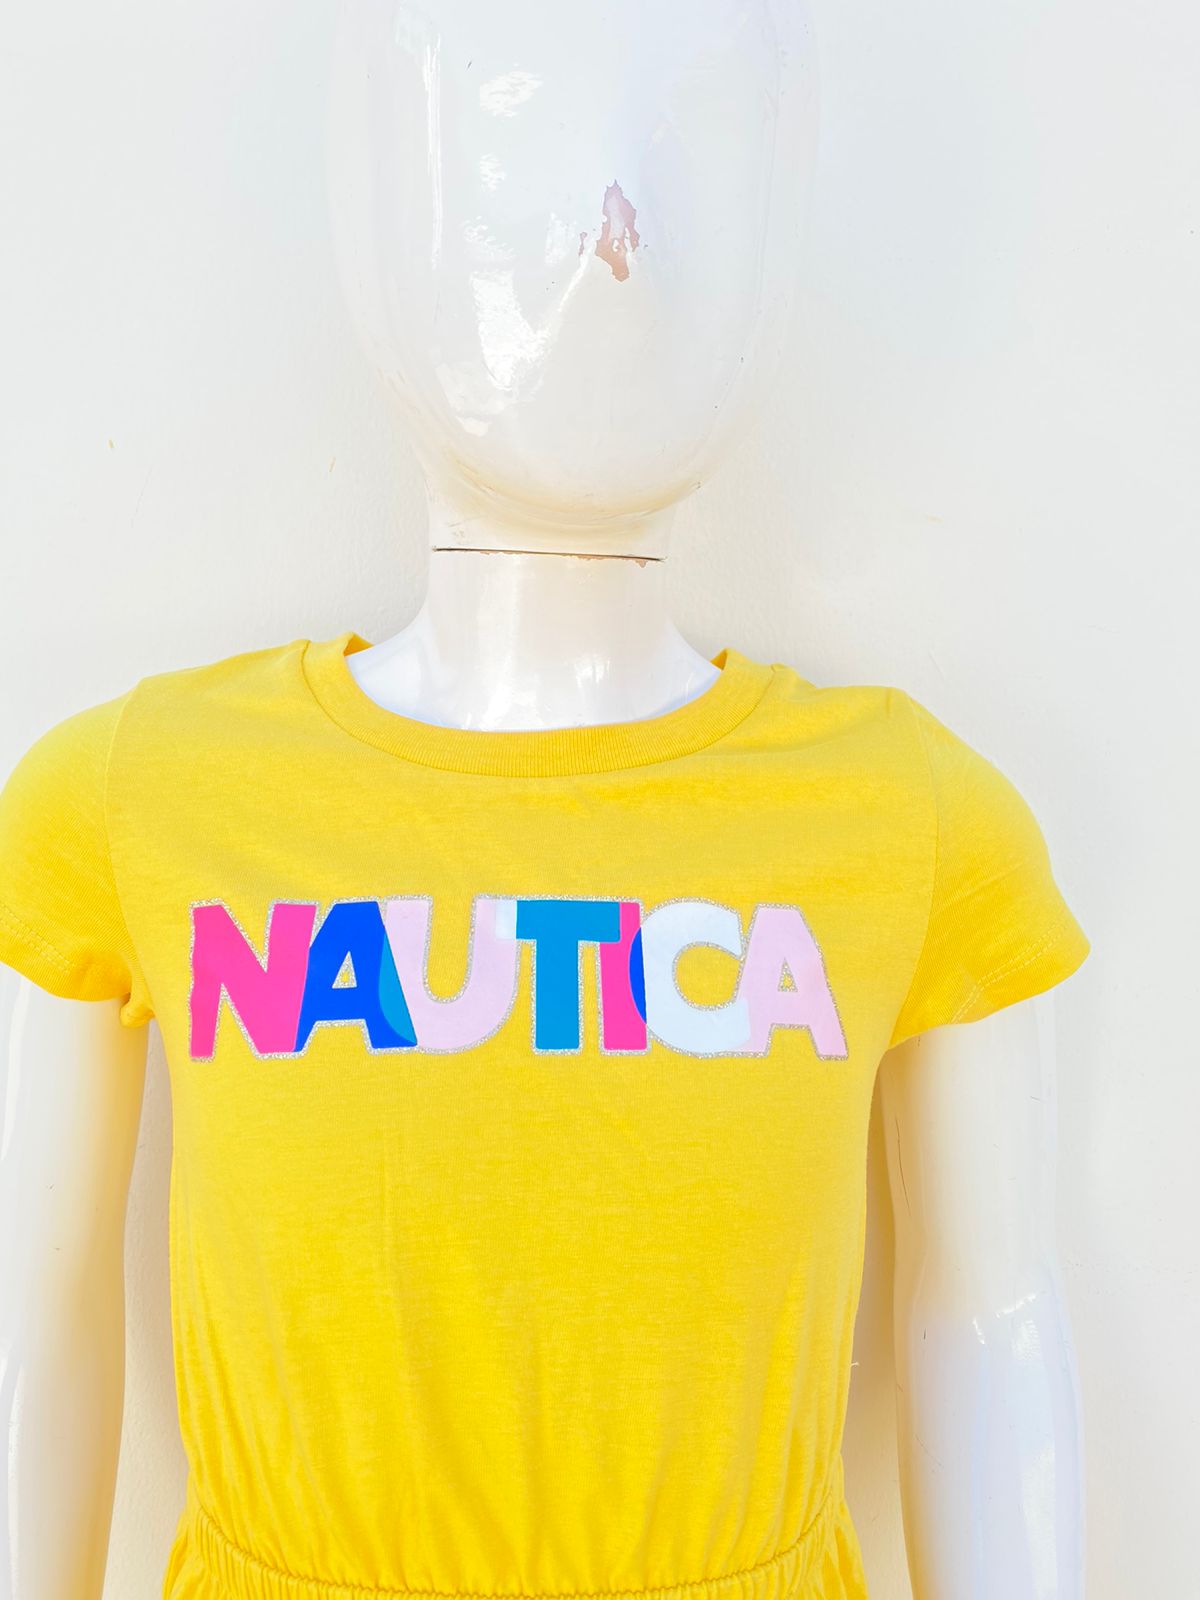 Vestido Nautica original amarillo con letras NAUTICA en colores pasteles.